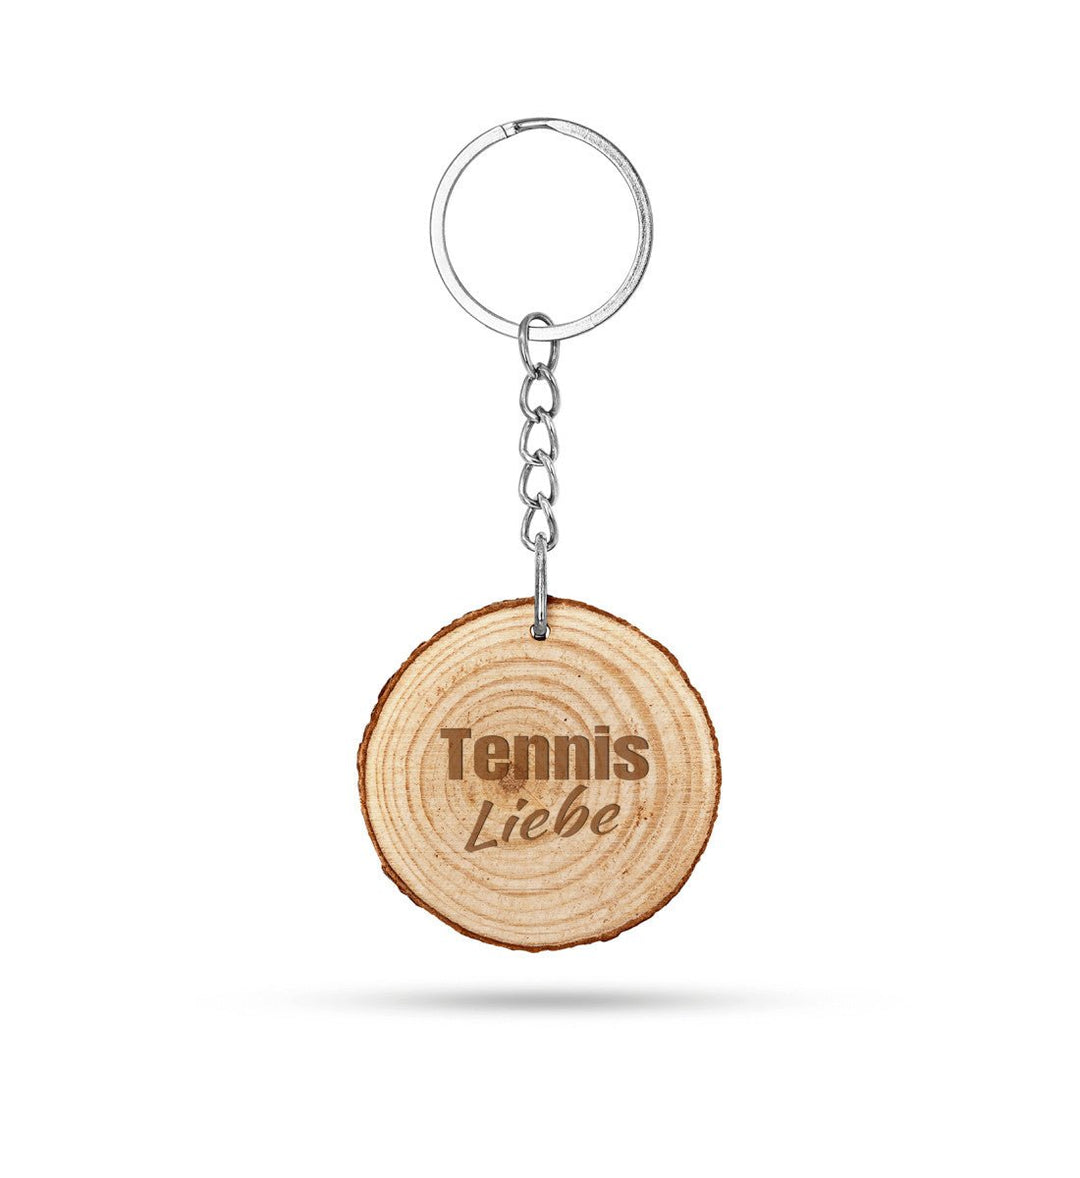 Tennisliebe - Holz | Schlüsselanhänger - Matchpoint24 - Kleidung für Tennisfans